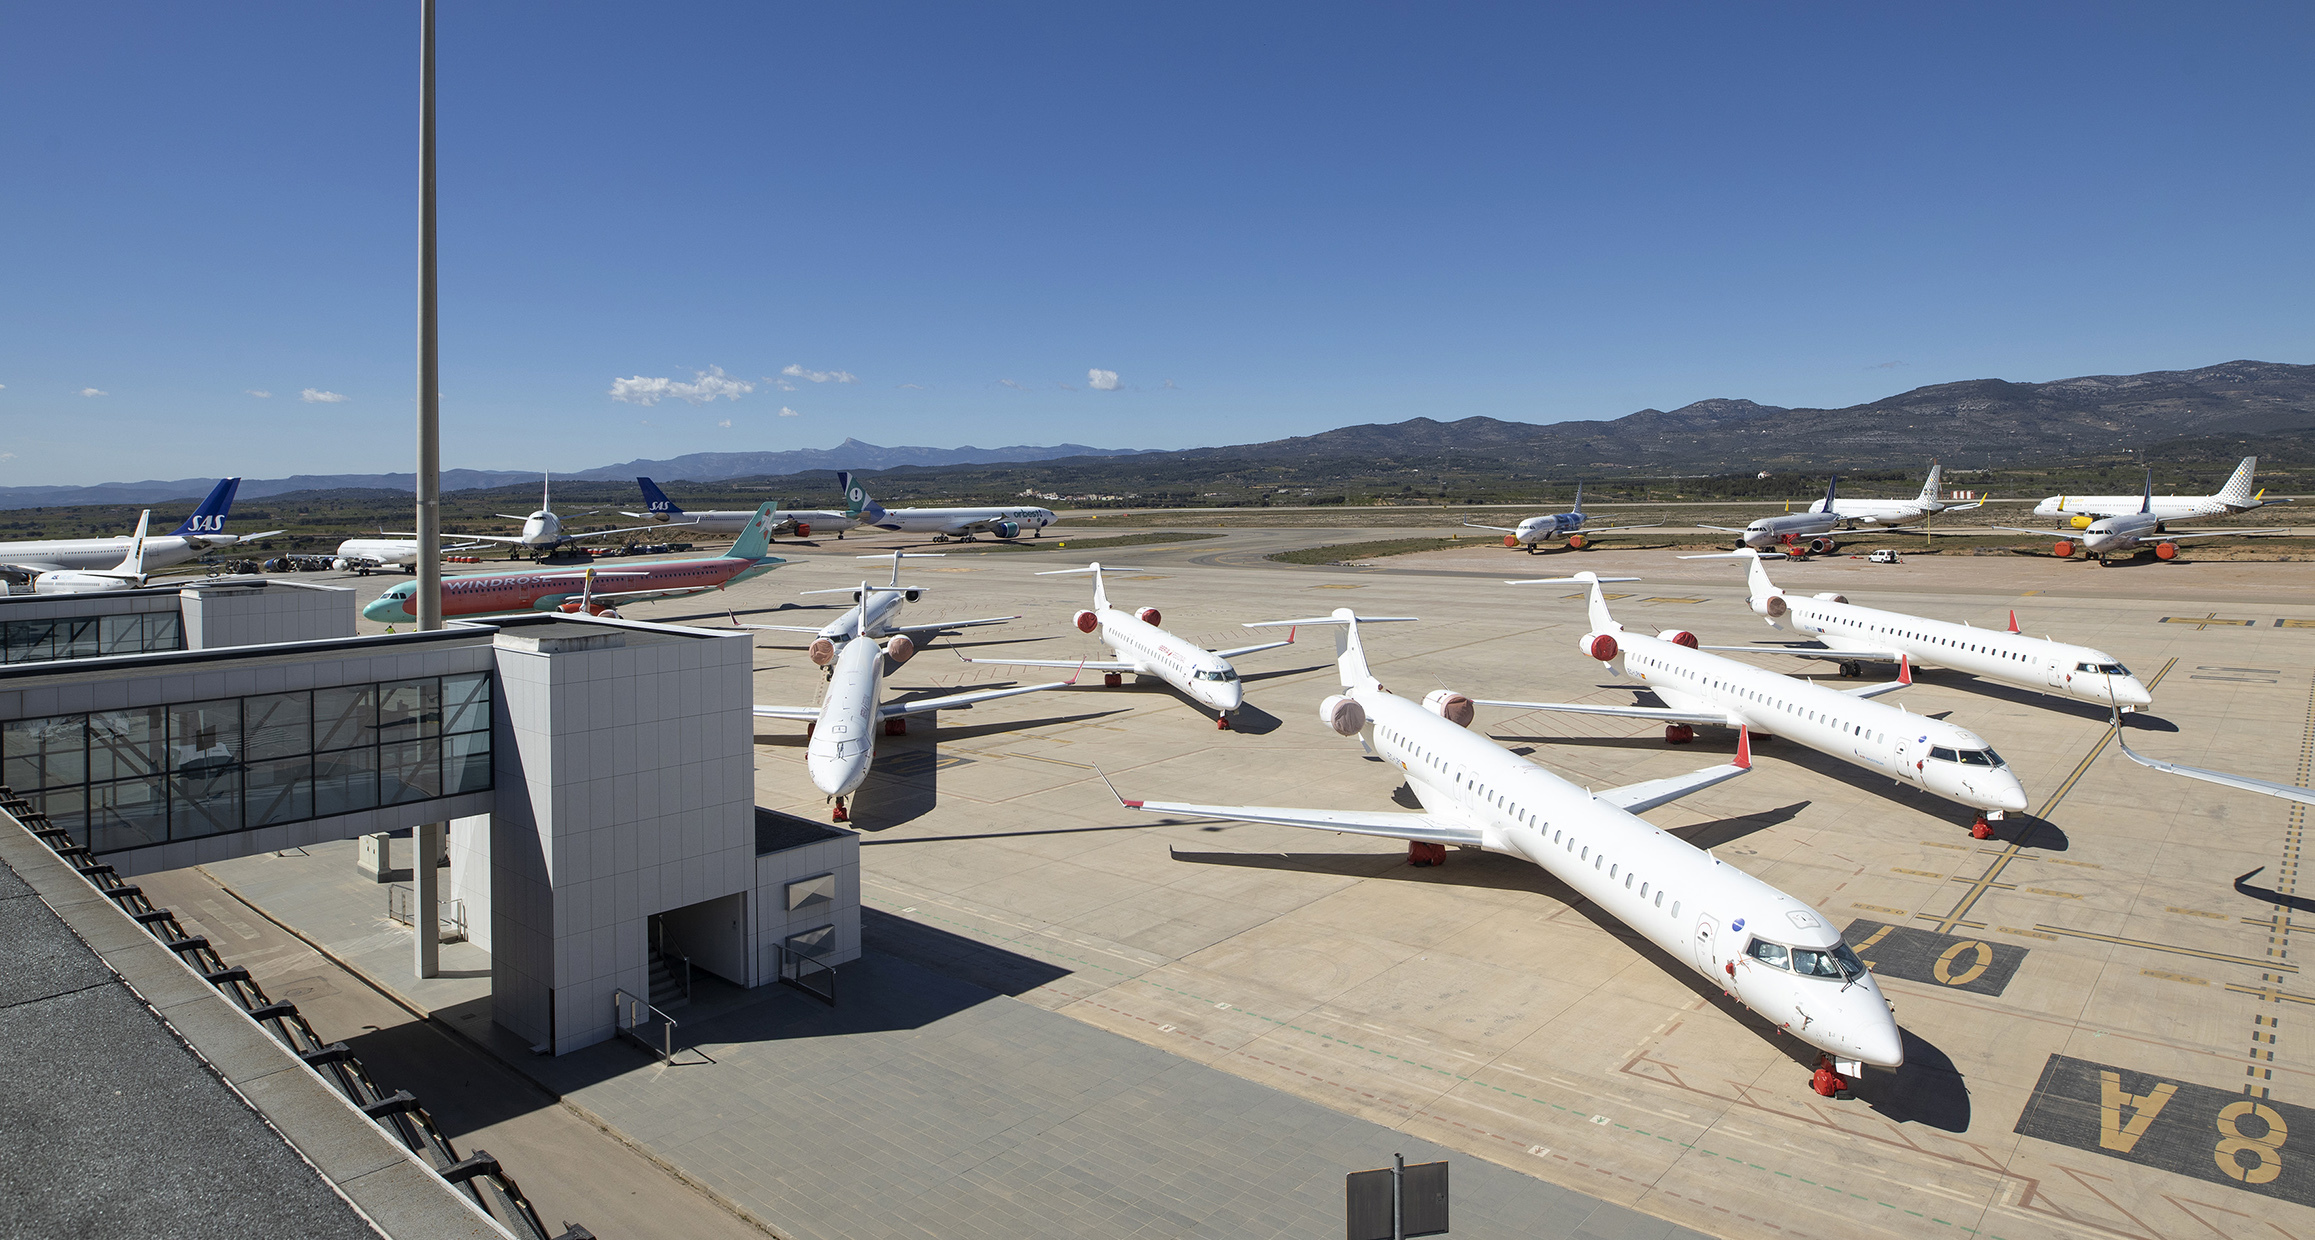 Letala parkirana na ploščadi letališča Castellón.